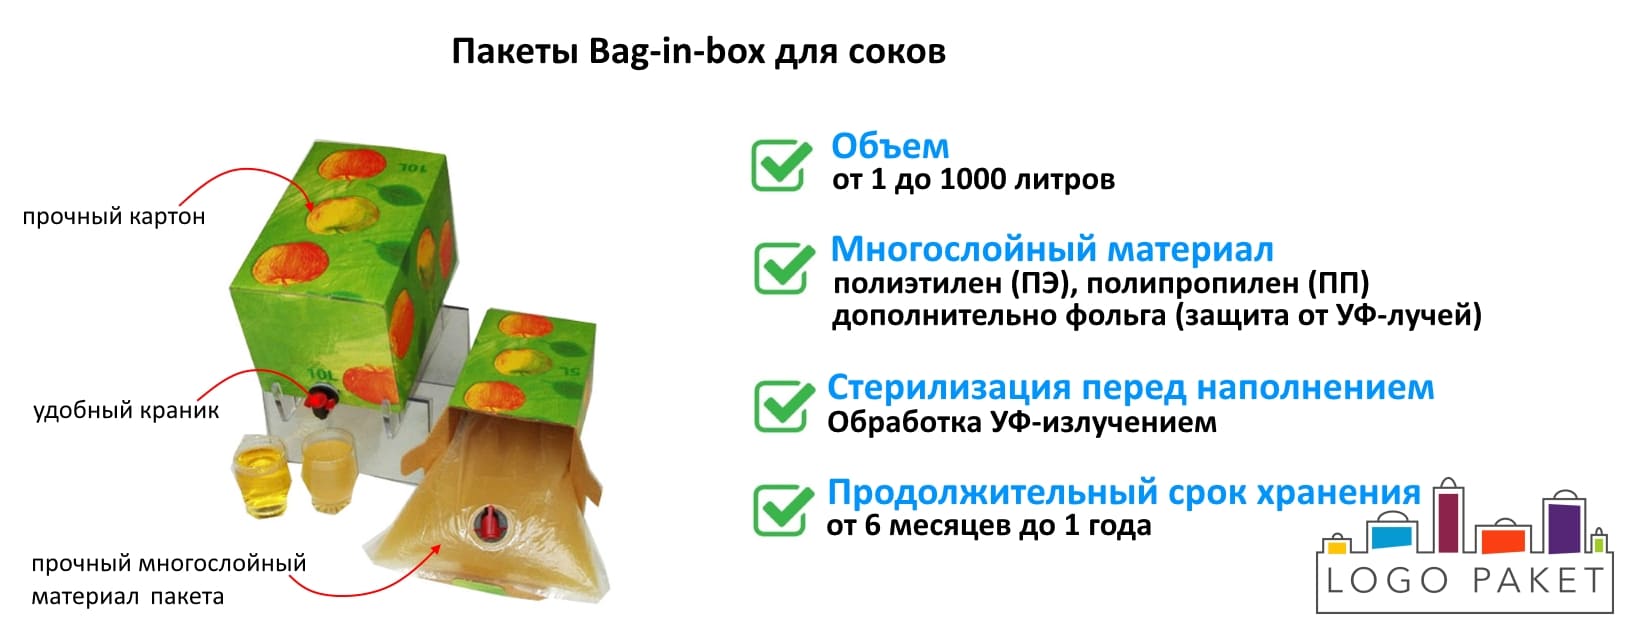 Пакеты Bag-in-box для соков инфографика